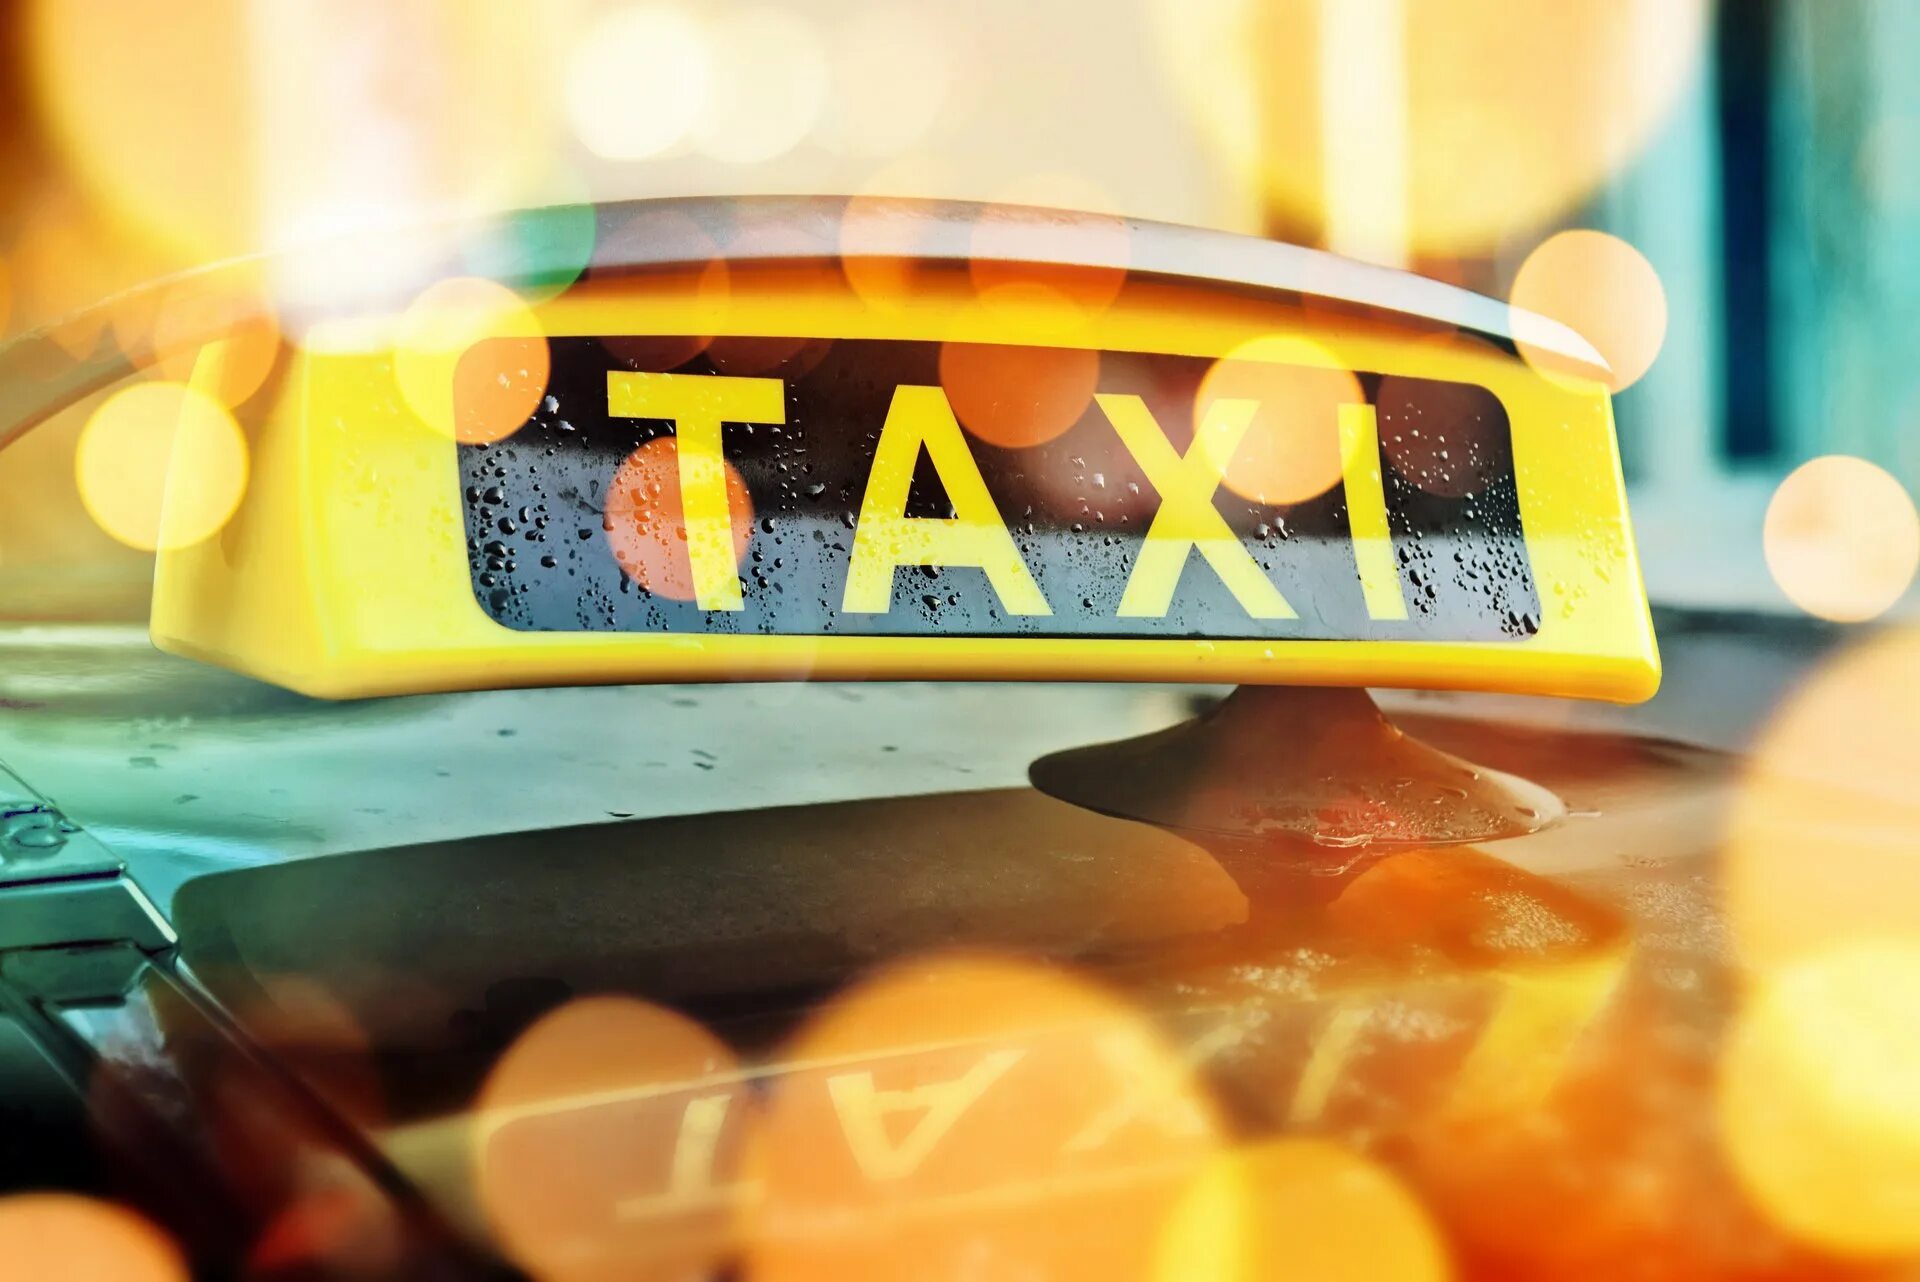 Taxi ordering. Такси. Такси картинки. Такси фон. Желтый фон такси.